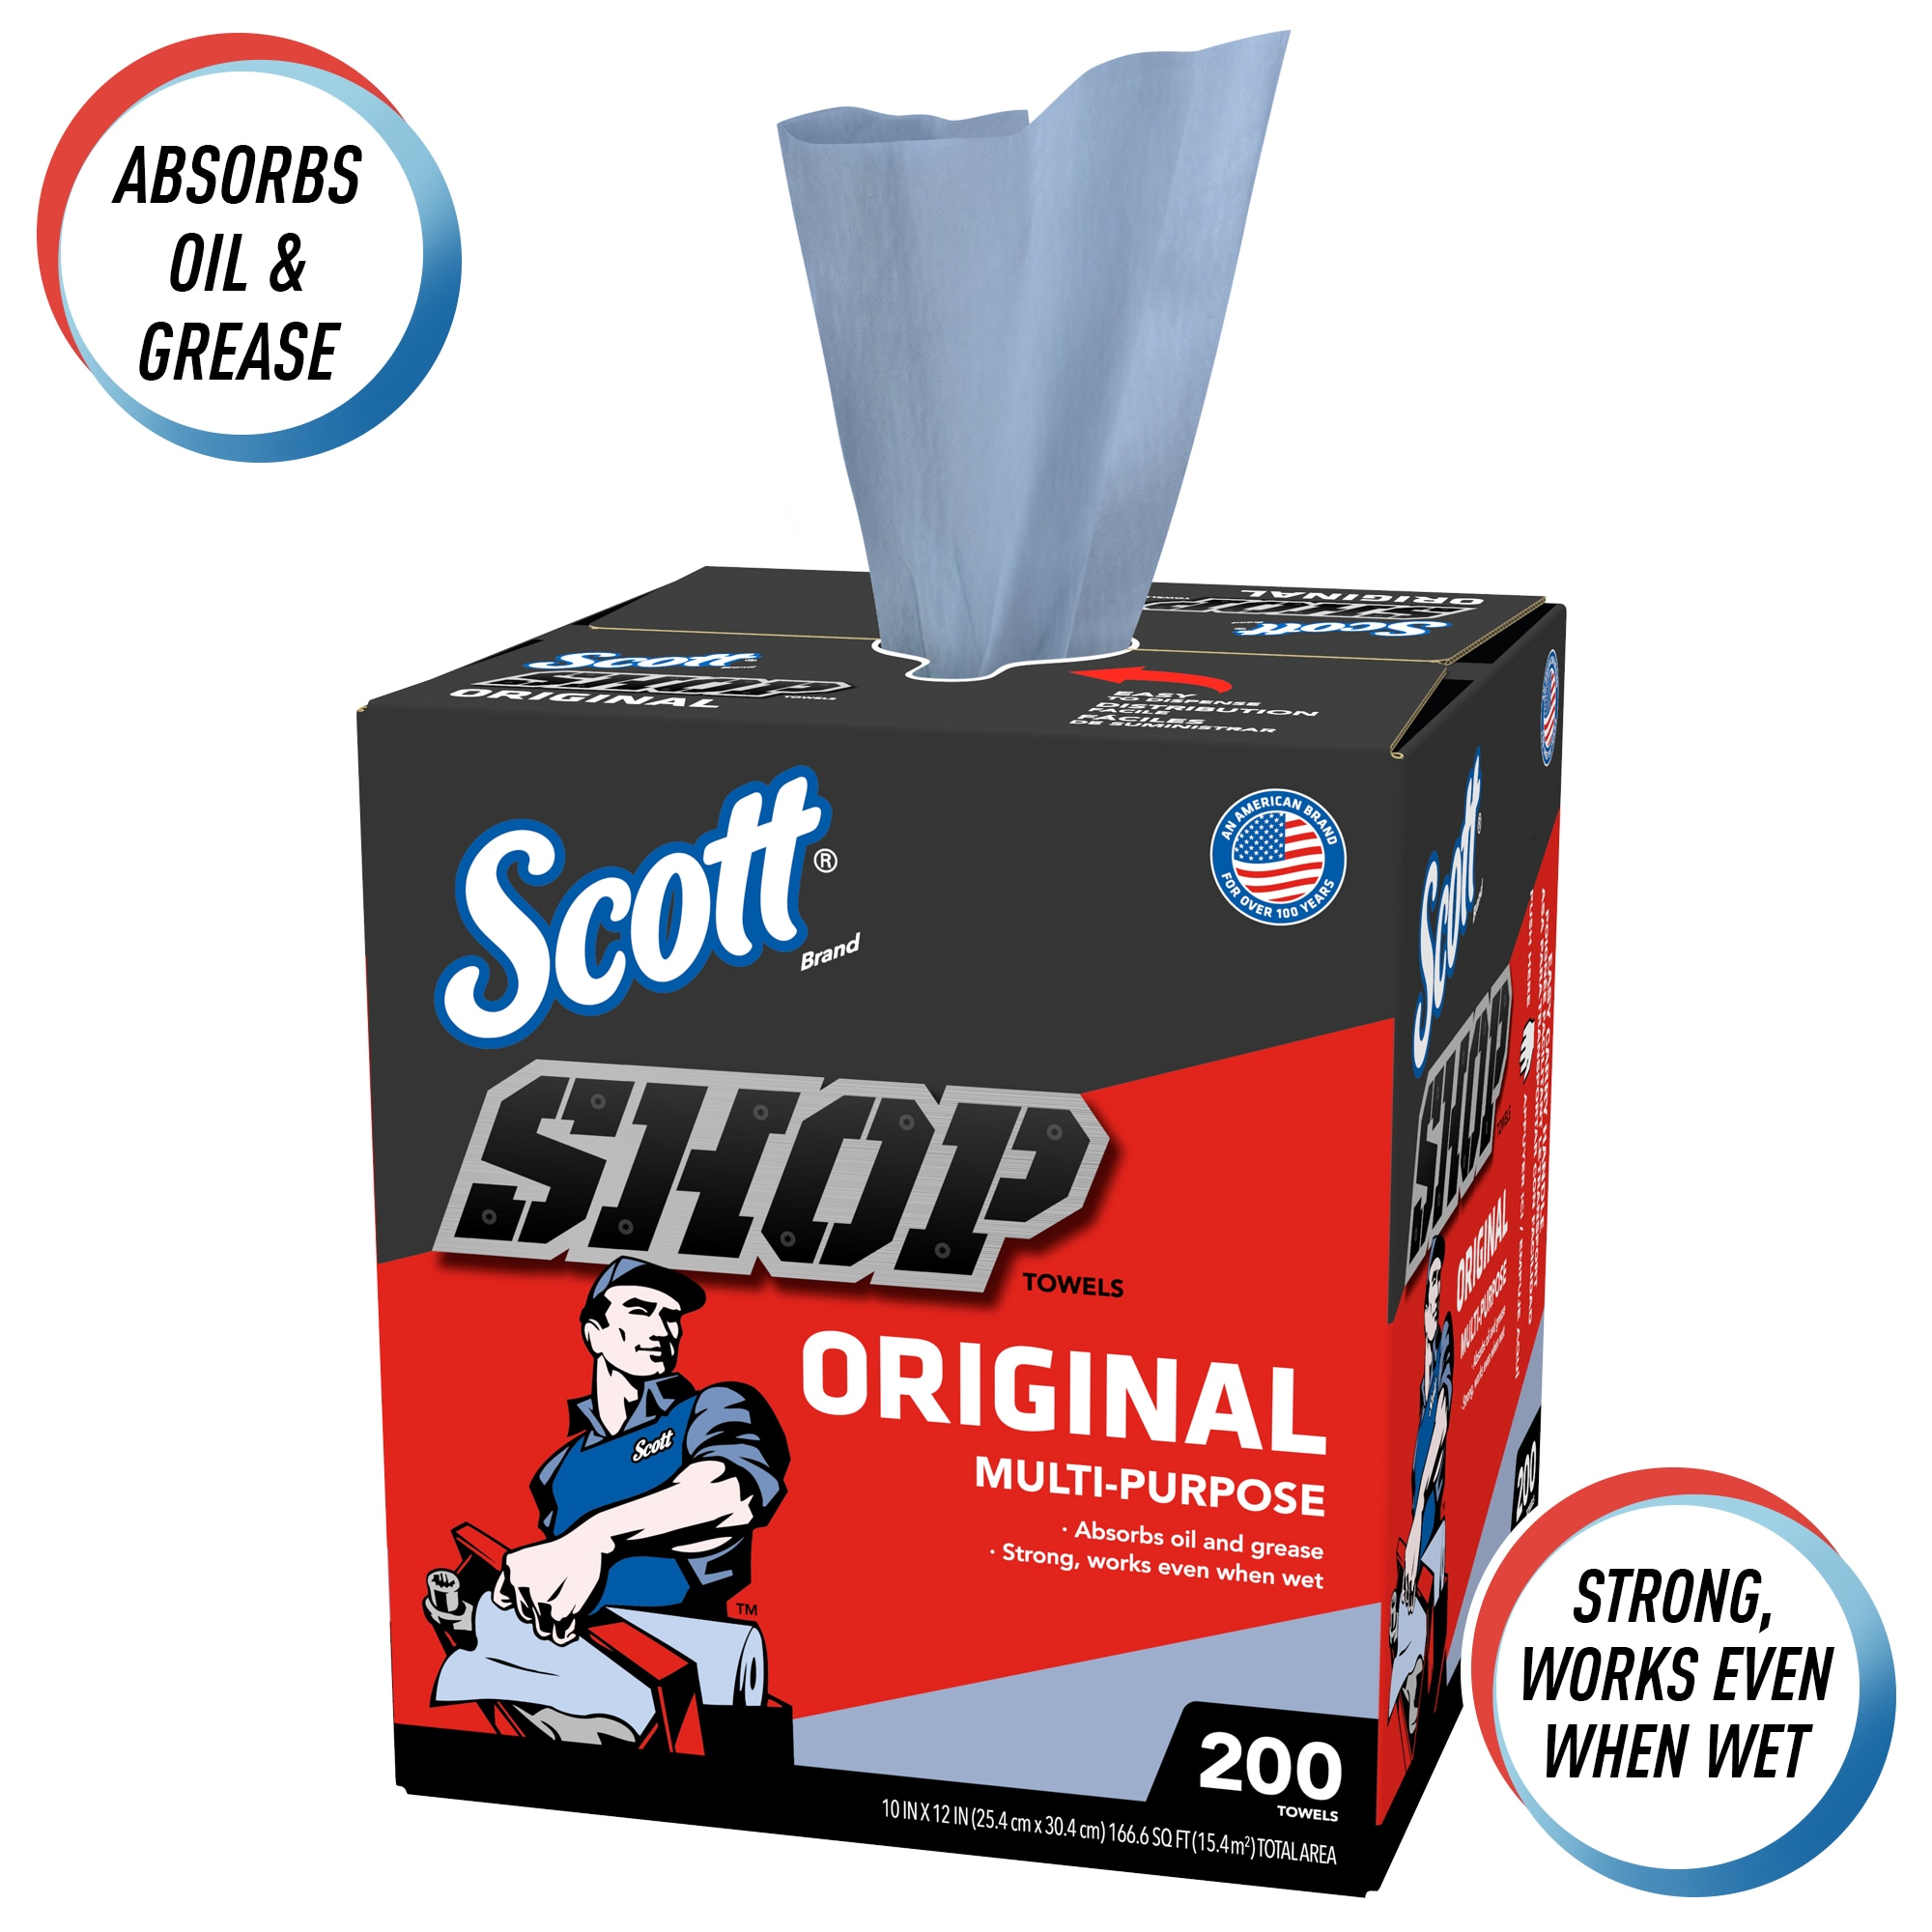 Blue Shop Towels 200-Count Box (6 Boxes per Case)